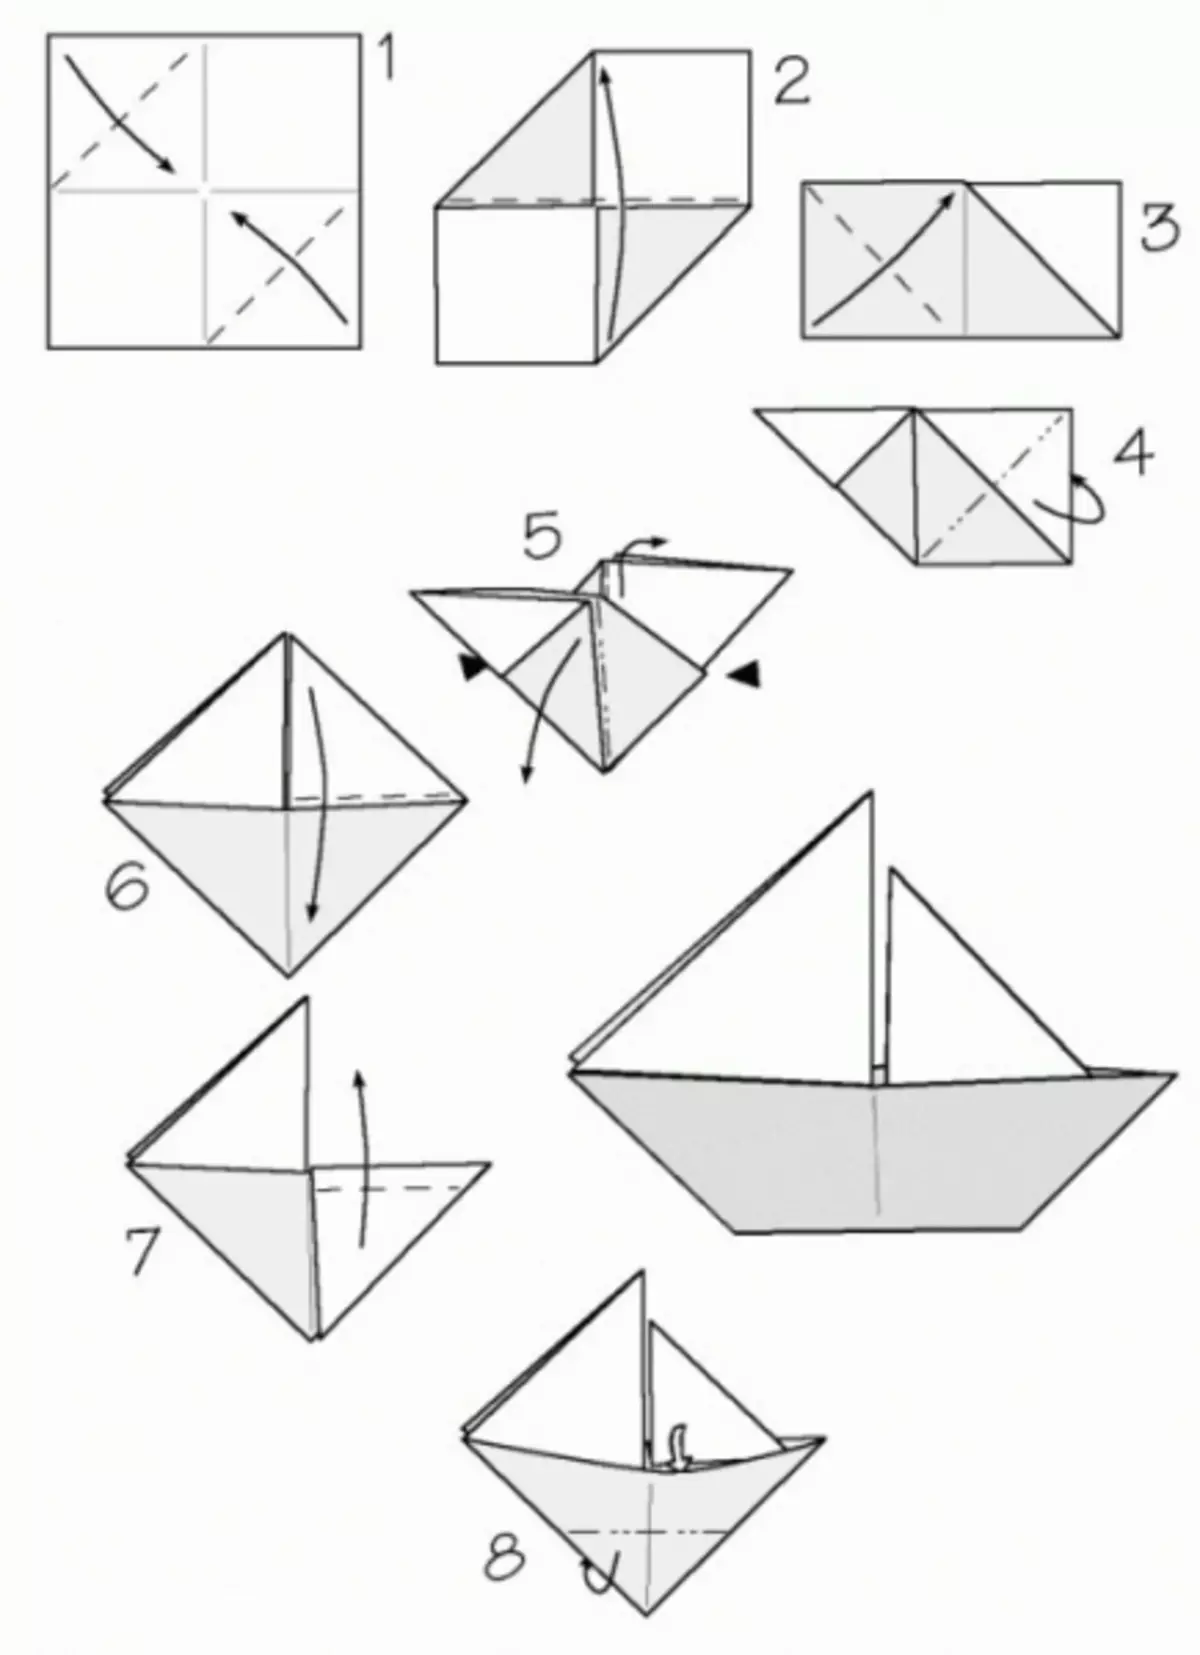 Кораблик из бумаги схема складывания